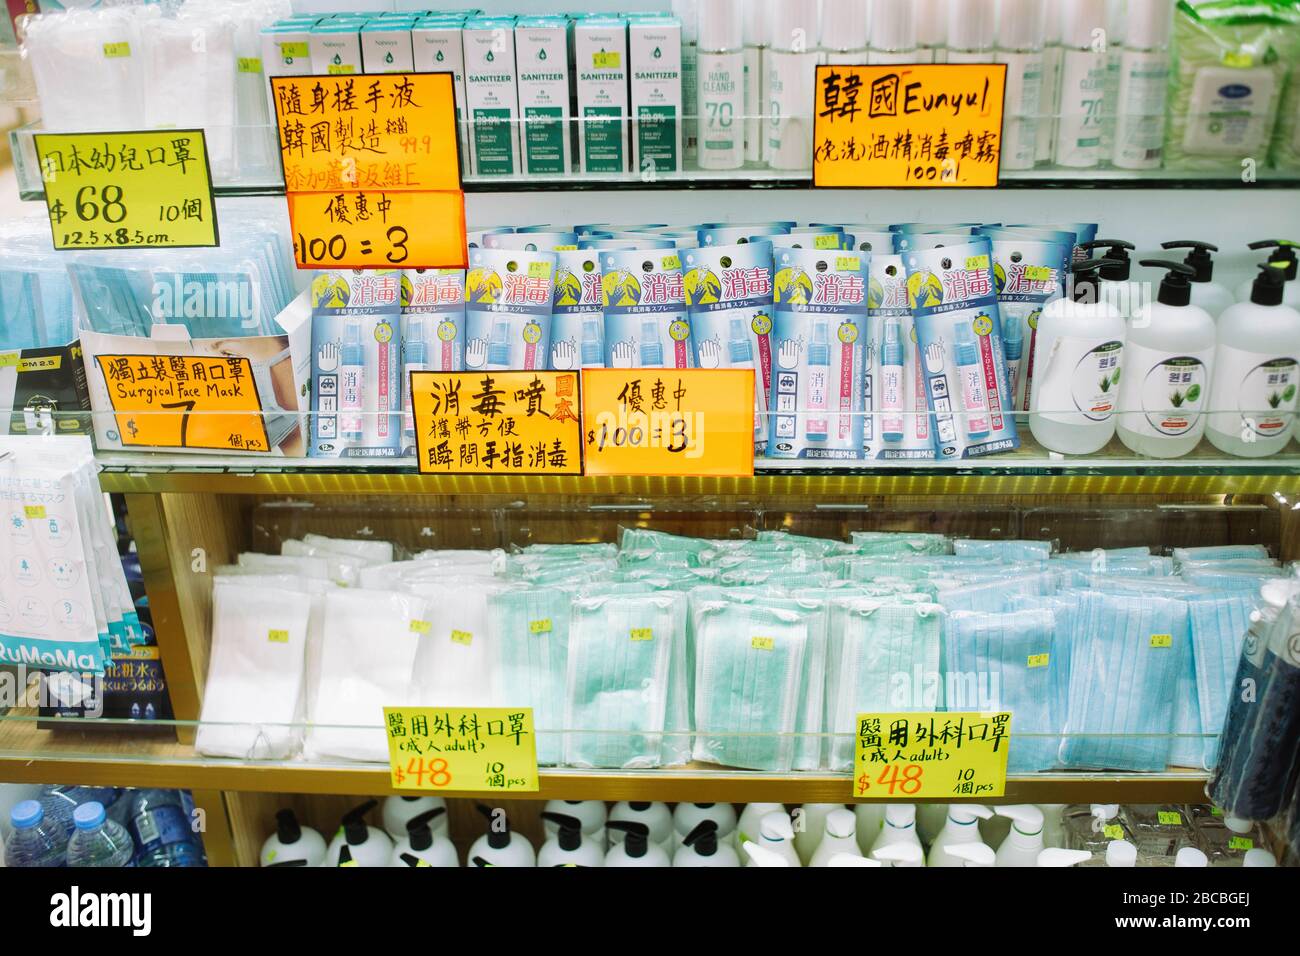 Hong Kong, 04 aprile 2020 - le maschere chirurgiche vengono vendute a Hong Kong con un prezzo maggiorato a causa del coronavirus. Foto Stock